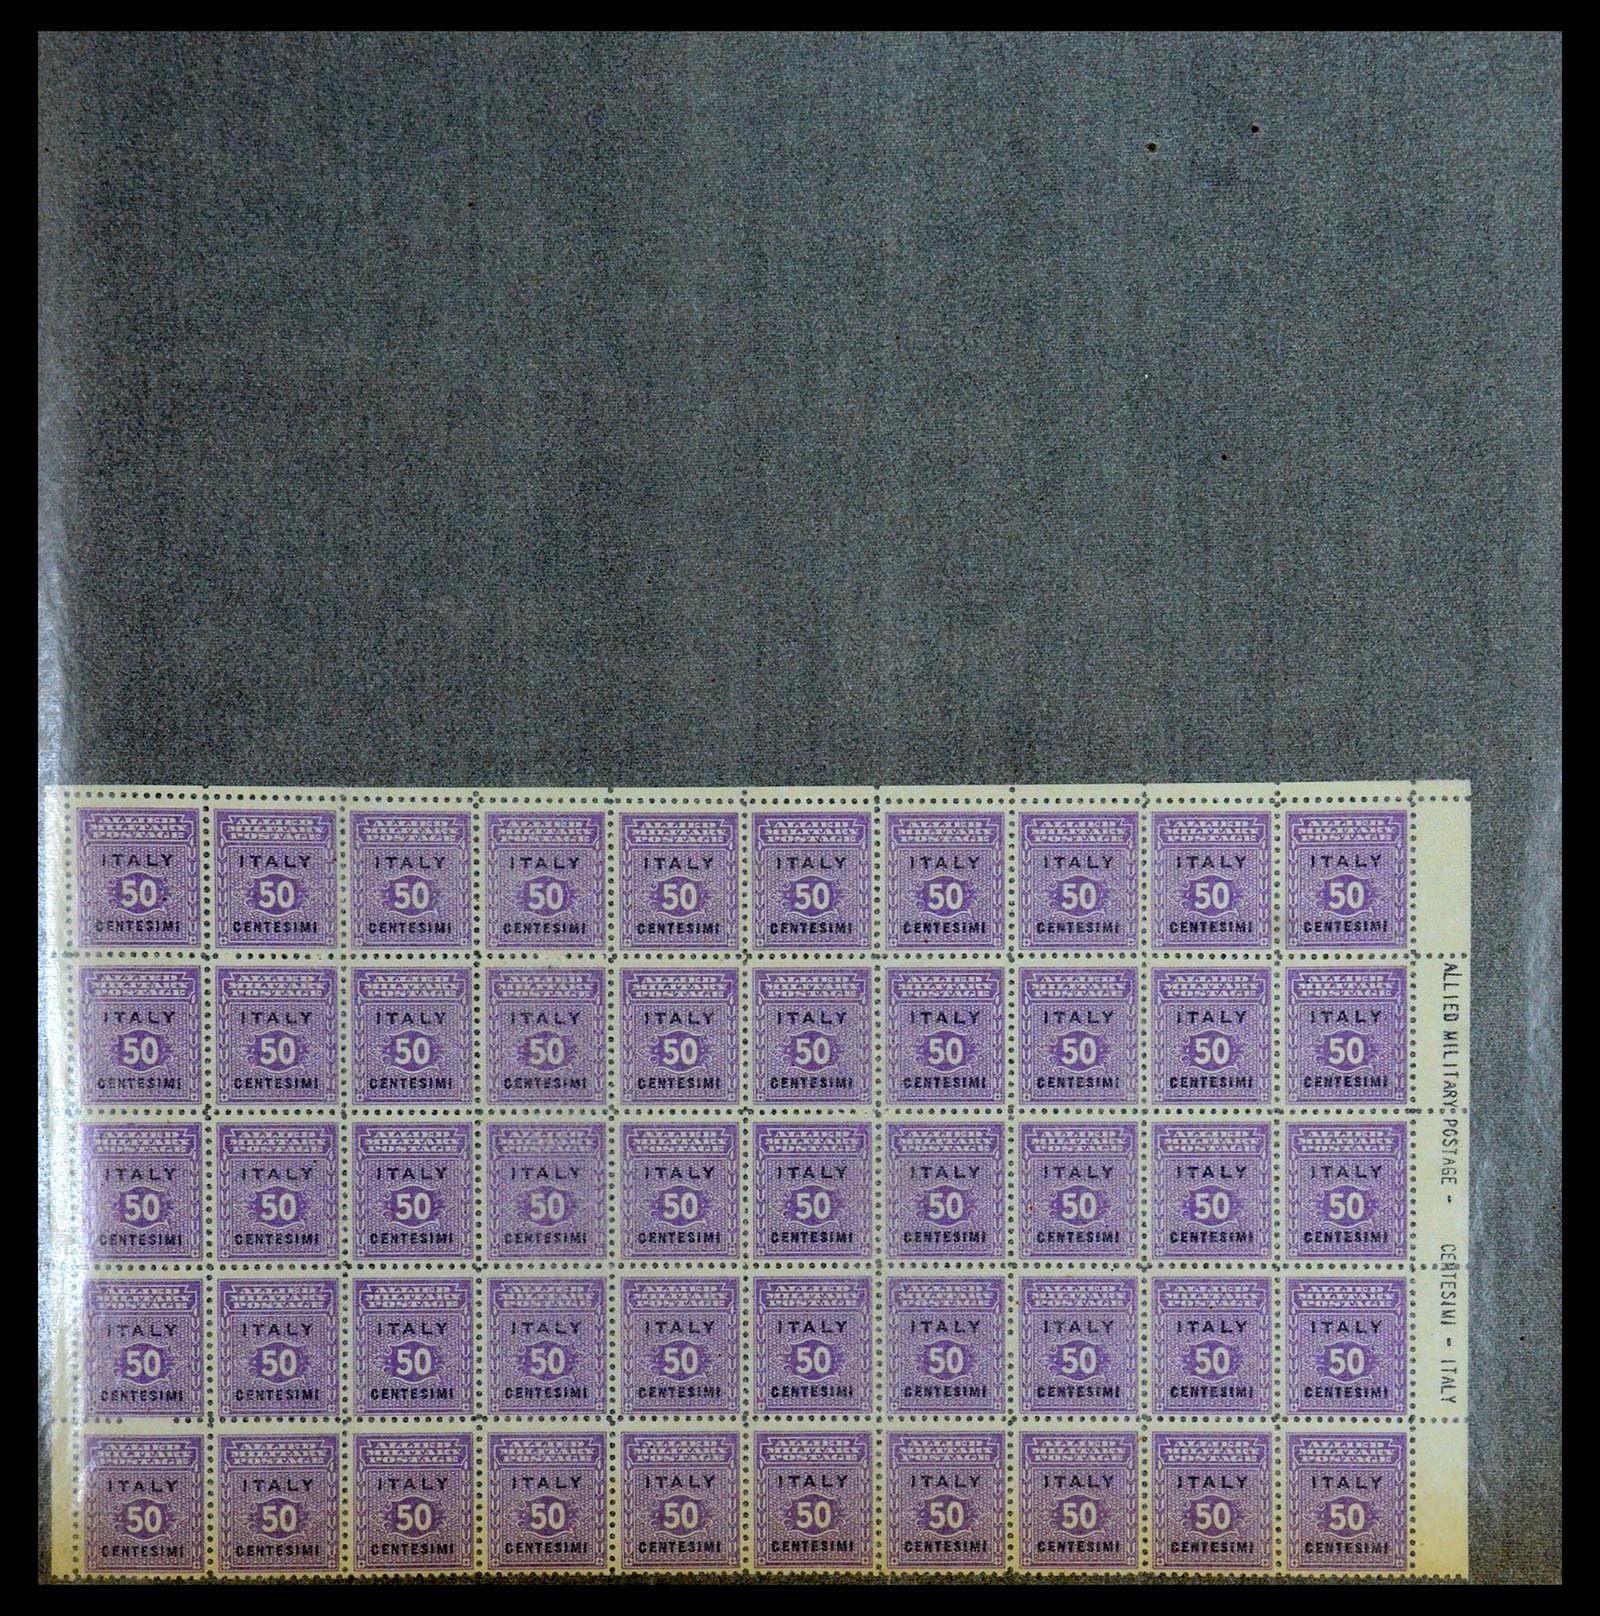 36313 136 - Postzegelverzameling 36313 Wereld uitzoekpartij 1850-1950.